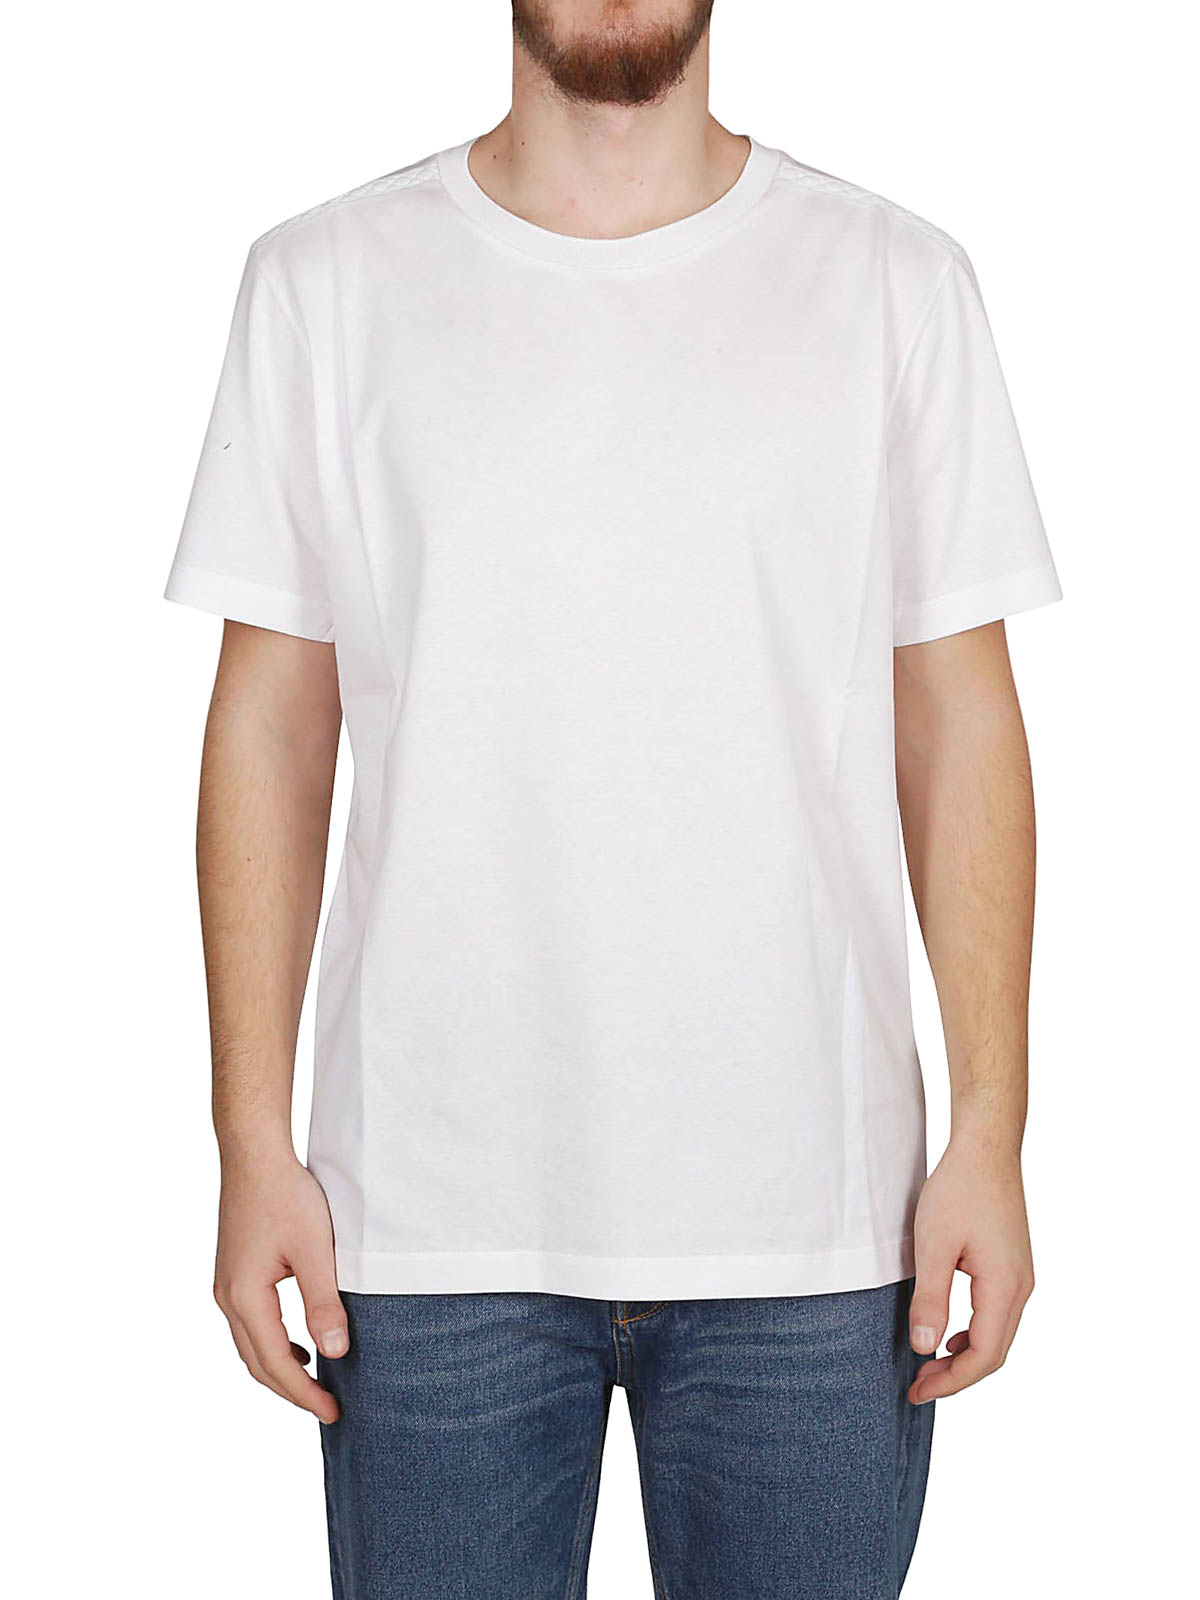 T-shirts Bottega Veneta - Intrecciato pattern white T-shirt ...